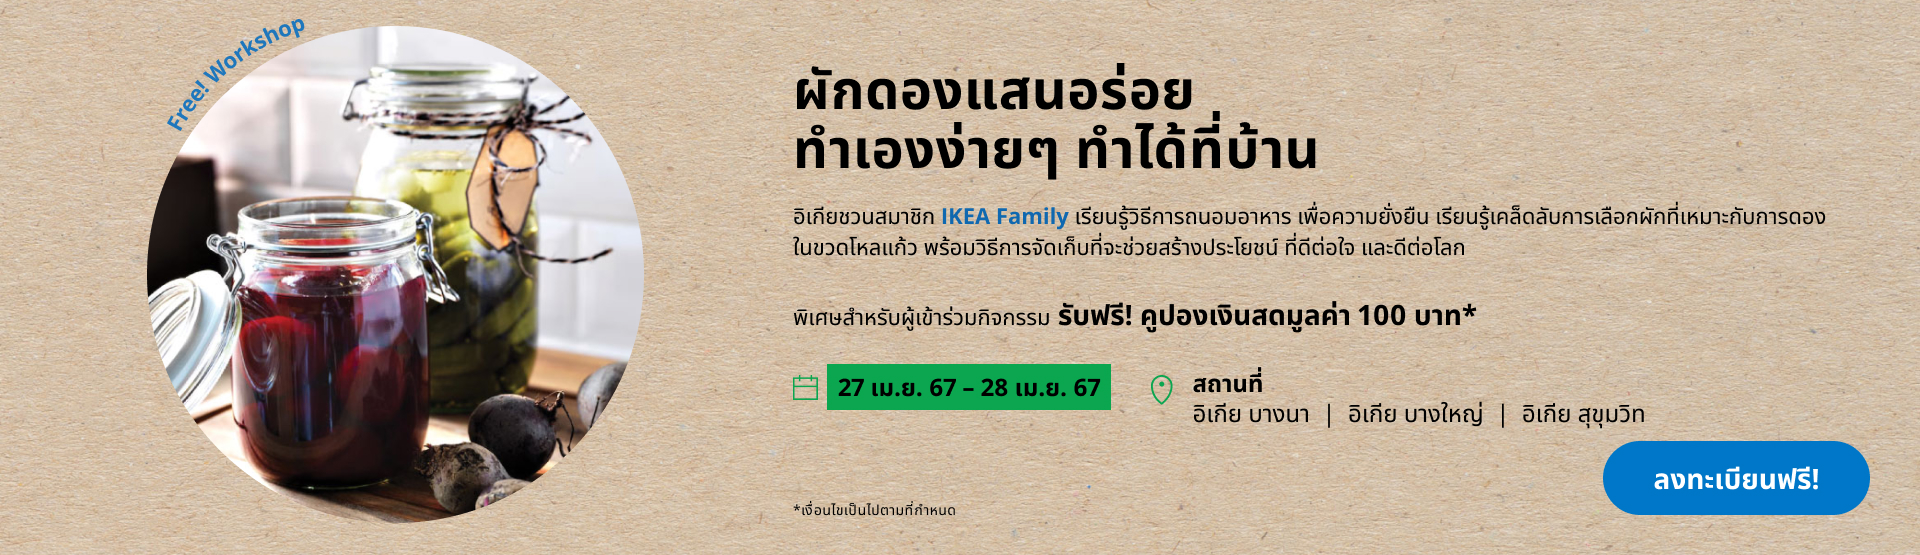 IKEA Family Thailand - Veggies Fermentation